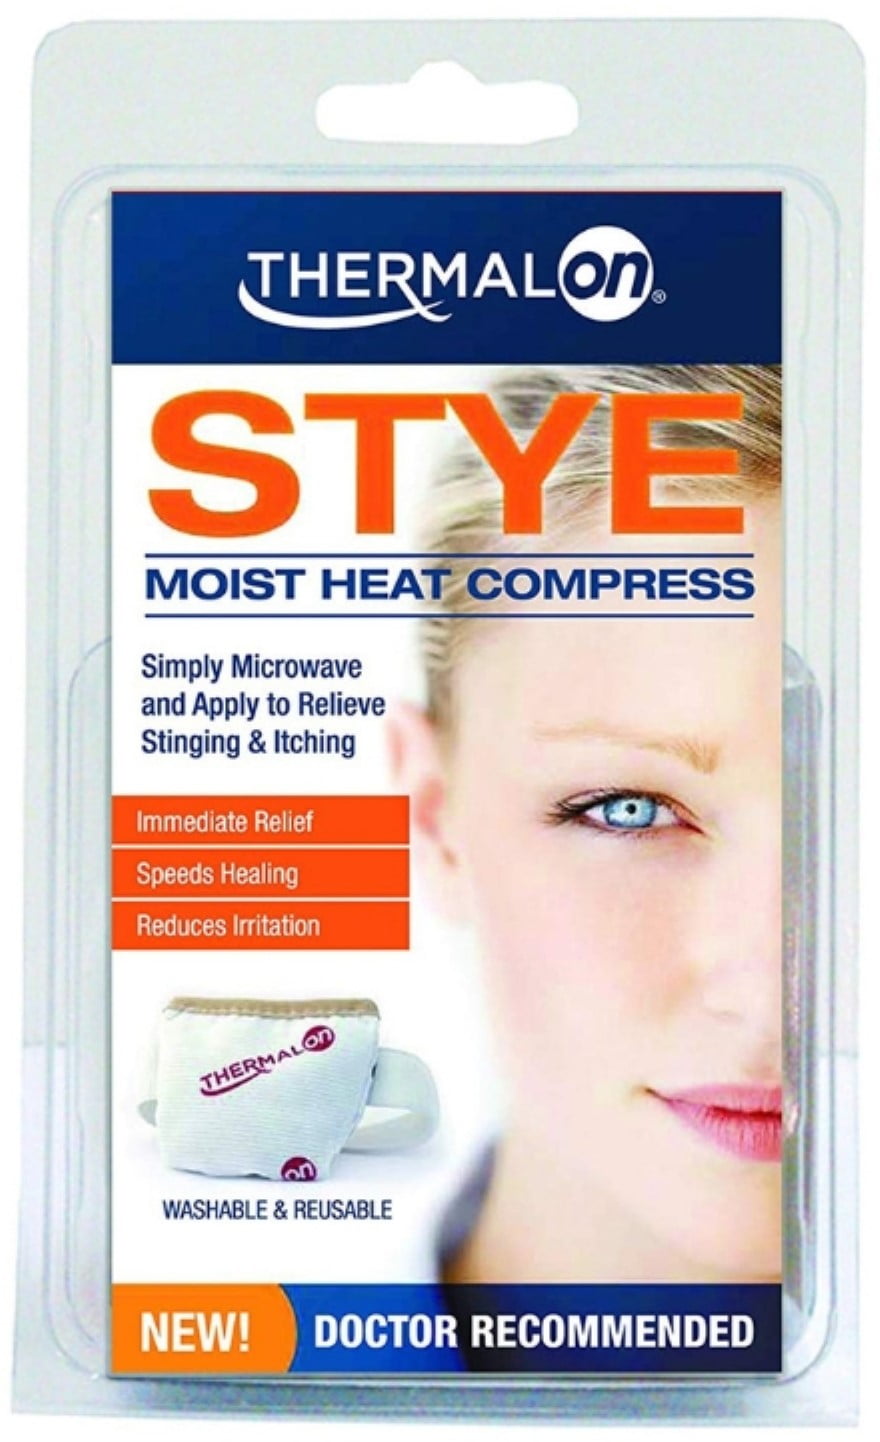 moist heat compress